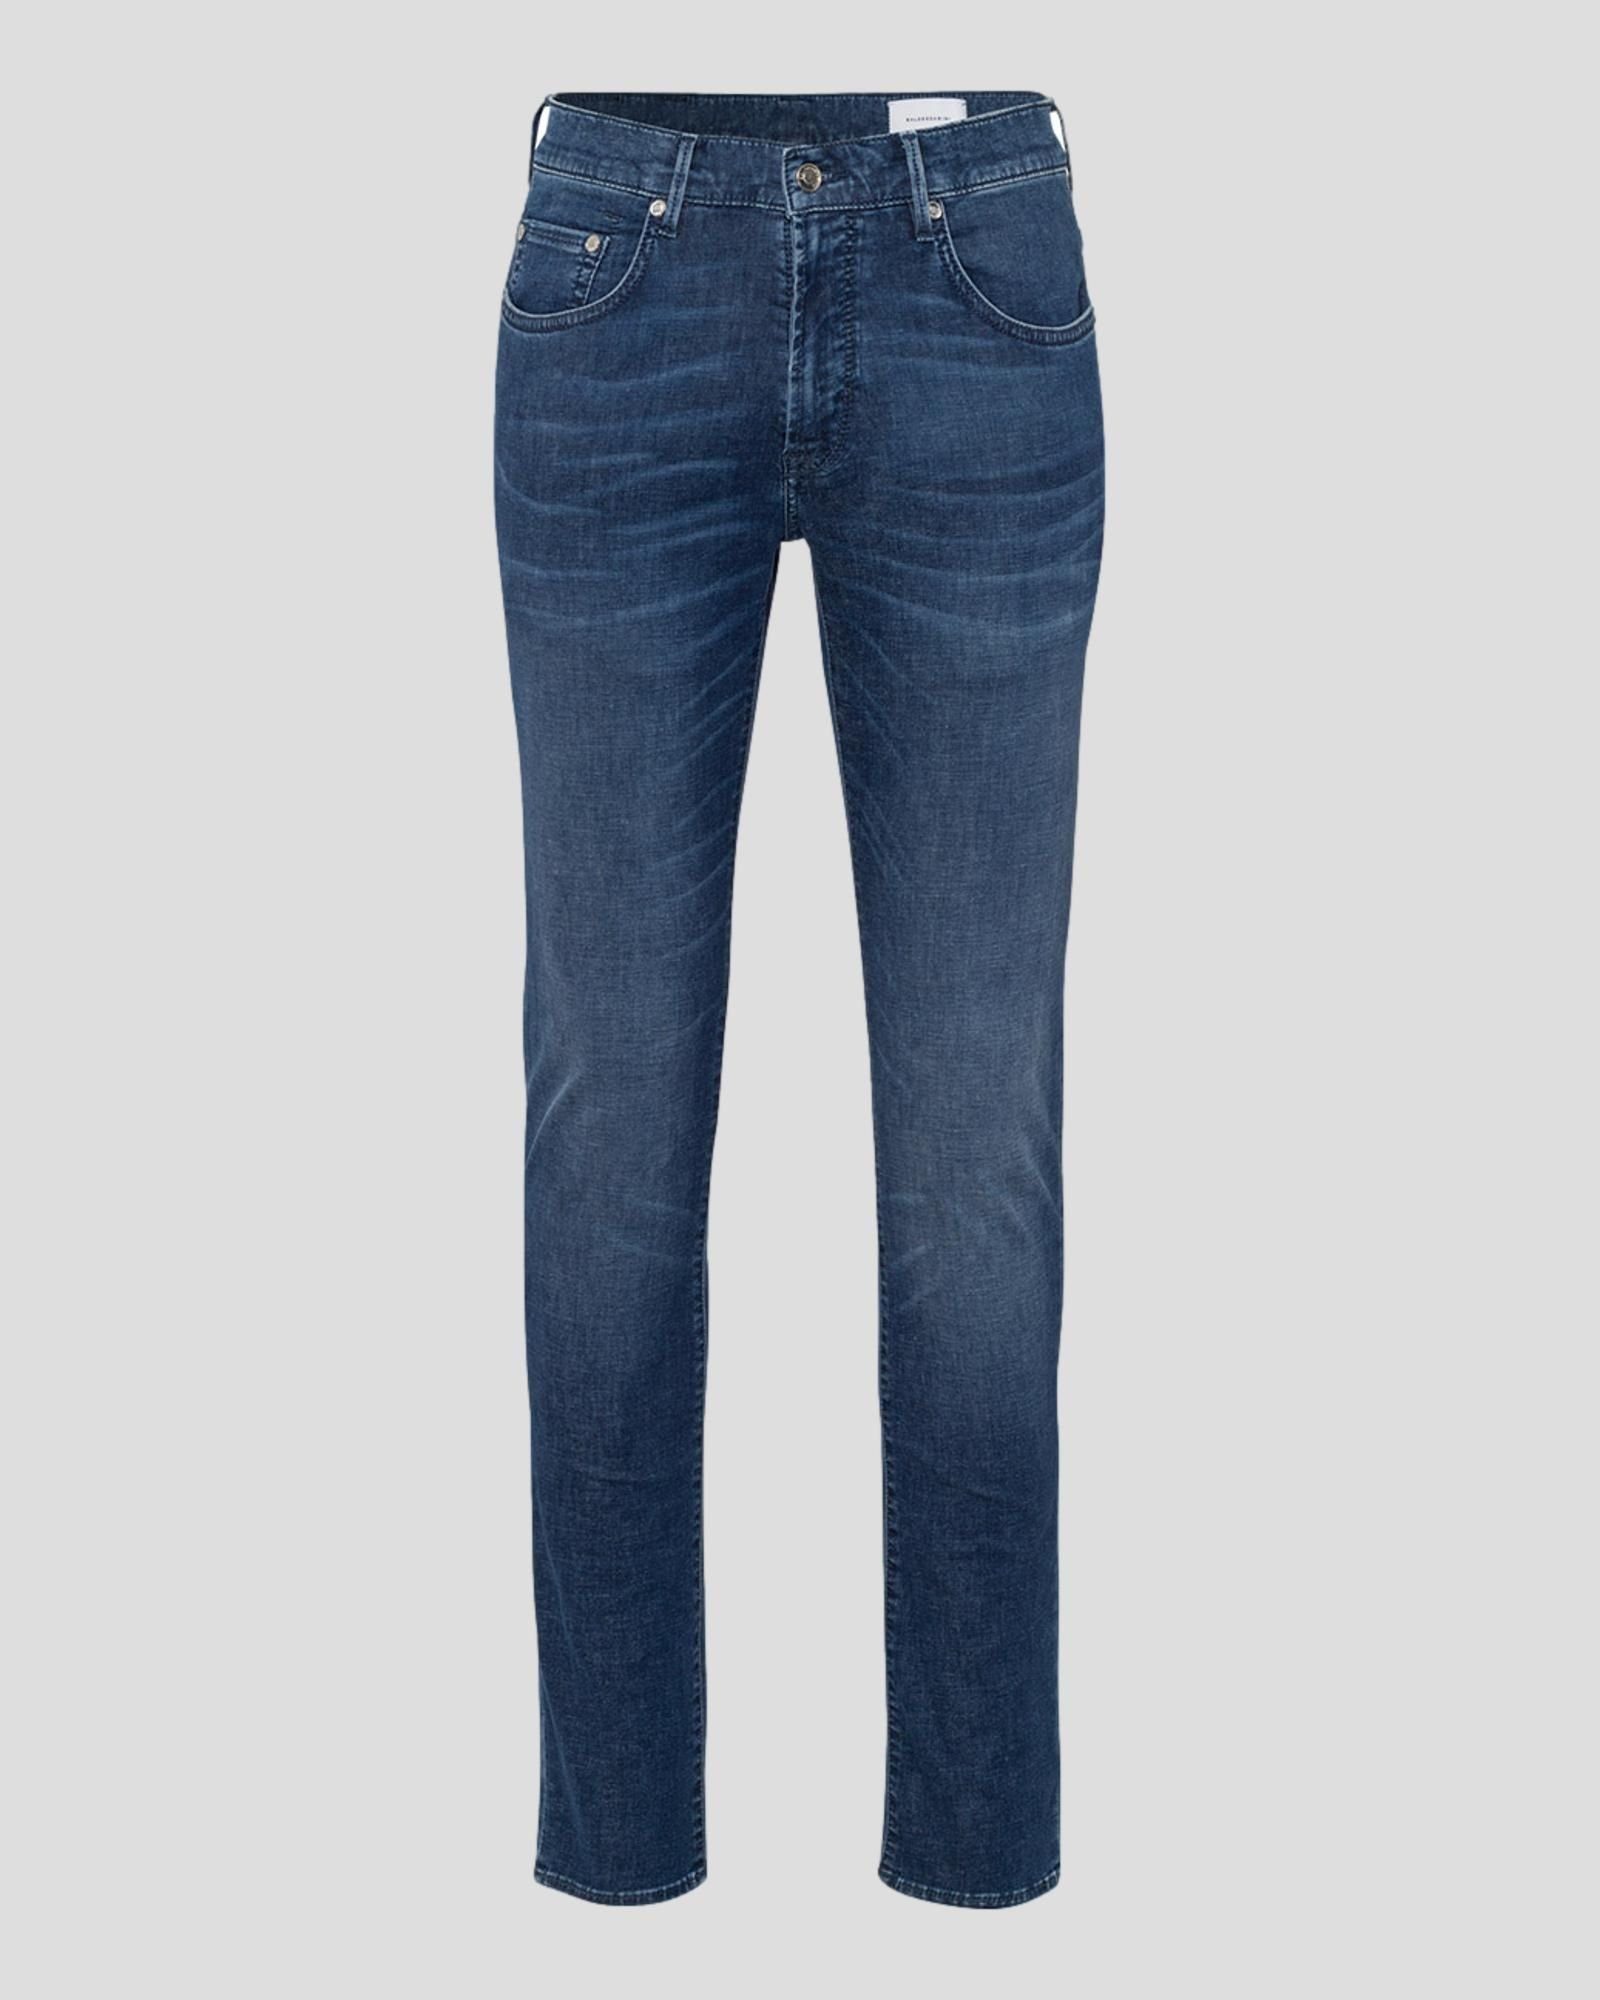 BALDESSARINI 5-Pocket-Jeans 6834 ocean blue used